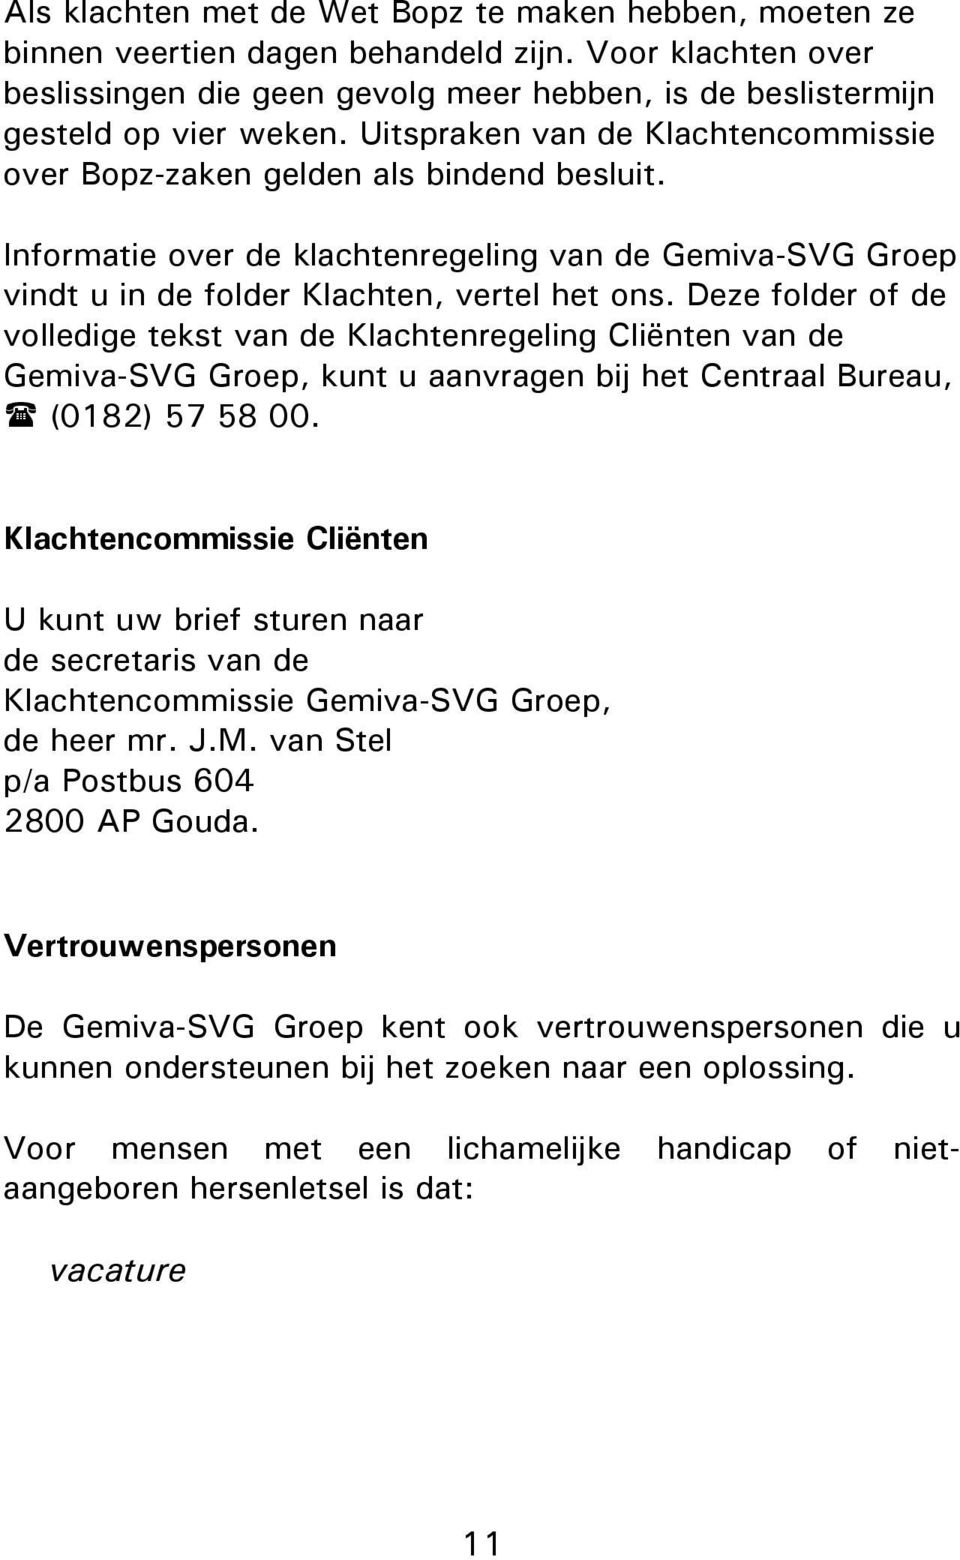 Deze folder of de volledige tekst van de Klachtenregeling Cliënten van de Gemiva-SVG Groep, kunt u aanvragen bij het Centraal Bureau, (0182) 57 58 00.